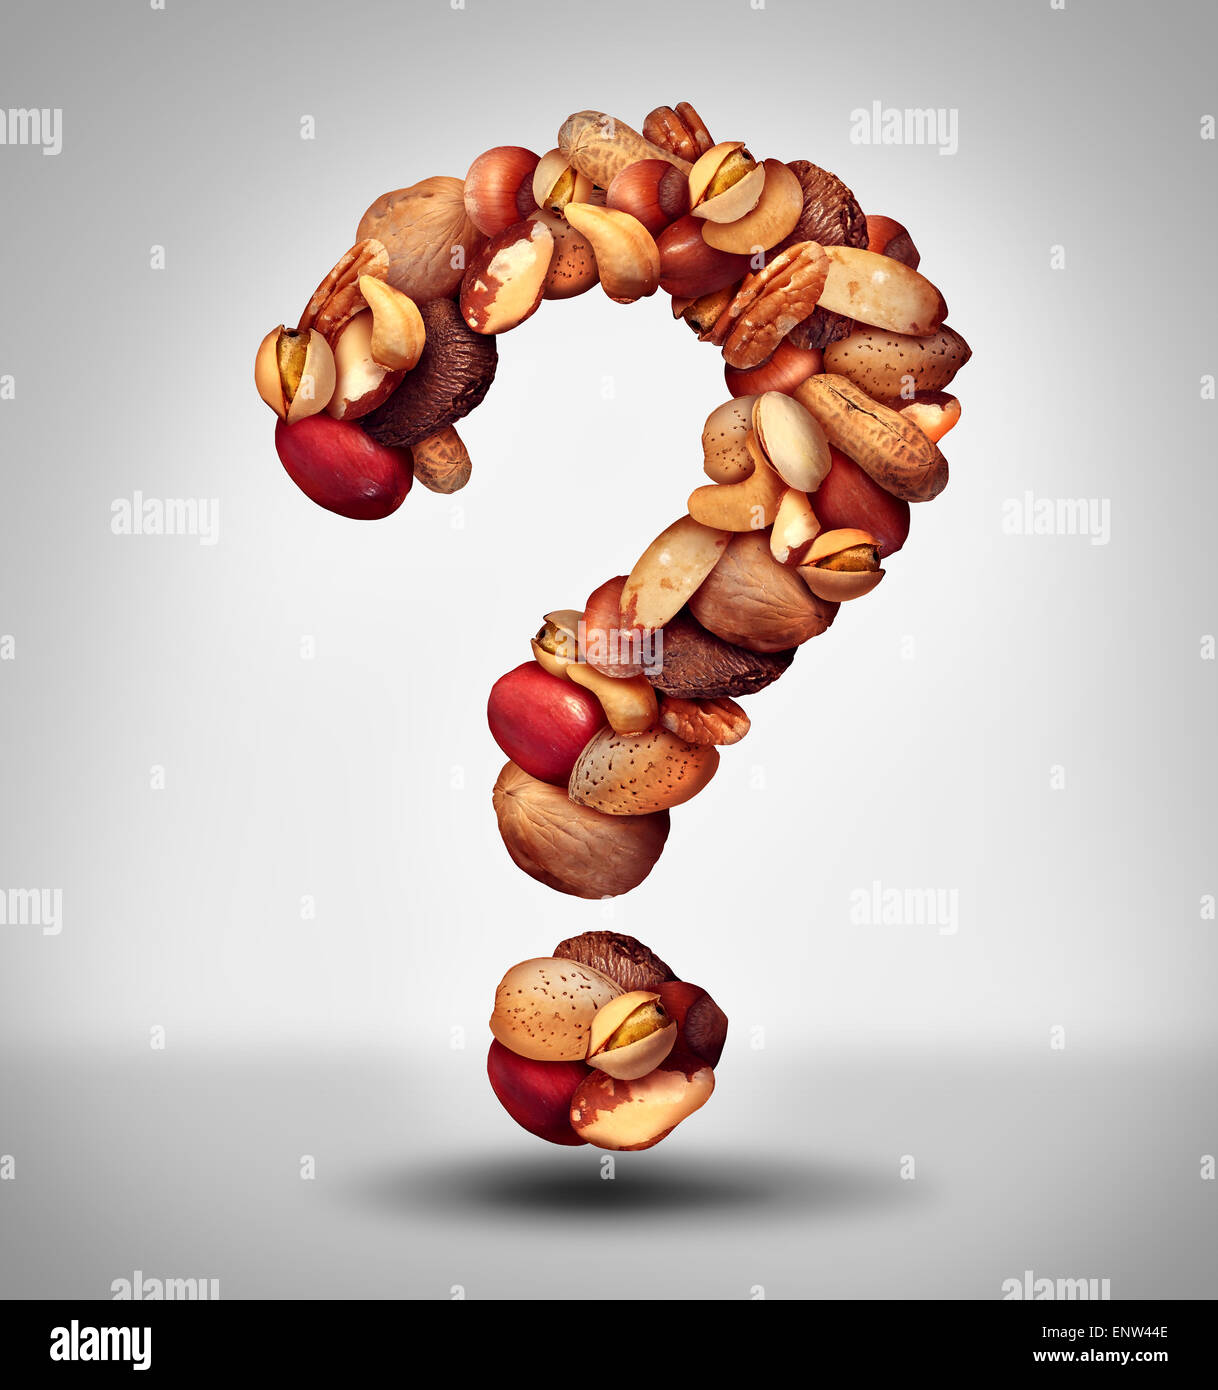 Eine gemischte Auswahl an Samen und Pecan mit Walnuss-Paranuss-Erdnuss, Haselnuss, Pistazie Mandel und Cashew-Nuss Fragezeichen Stockfoto